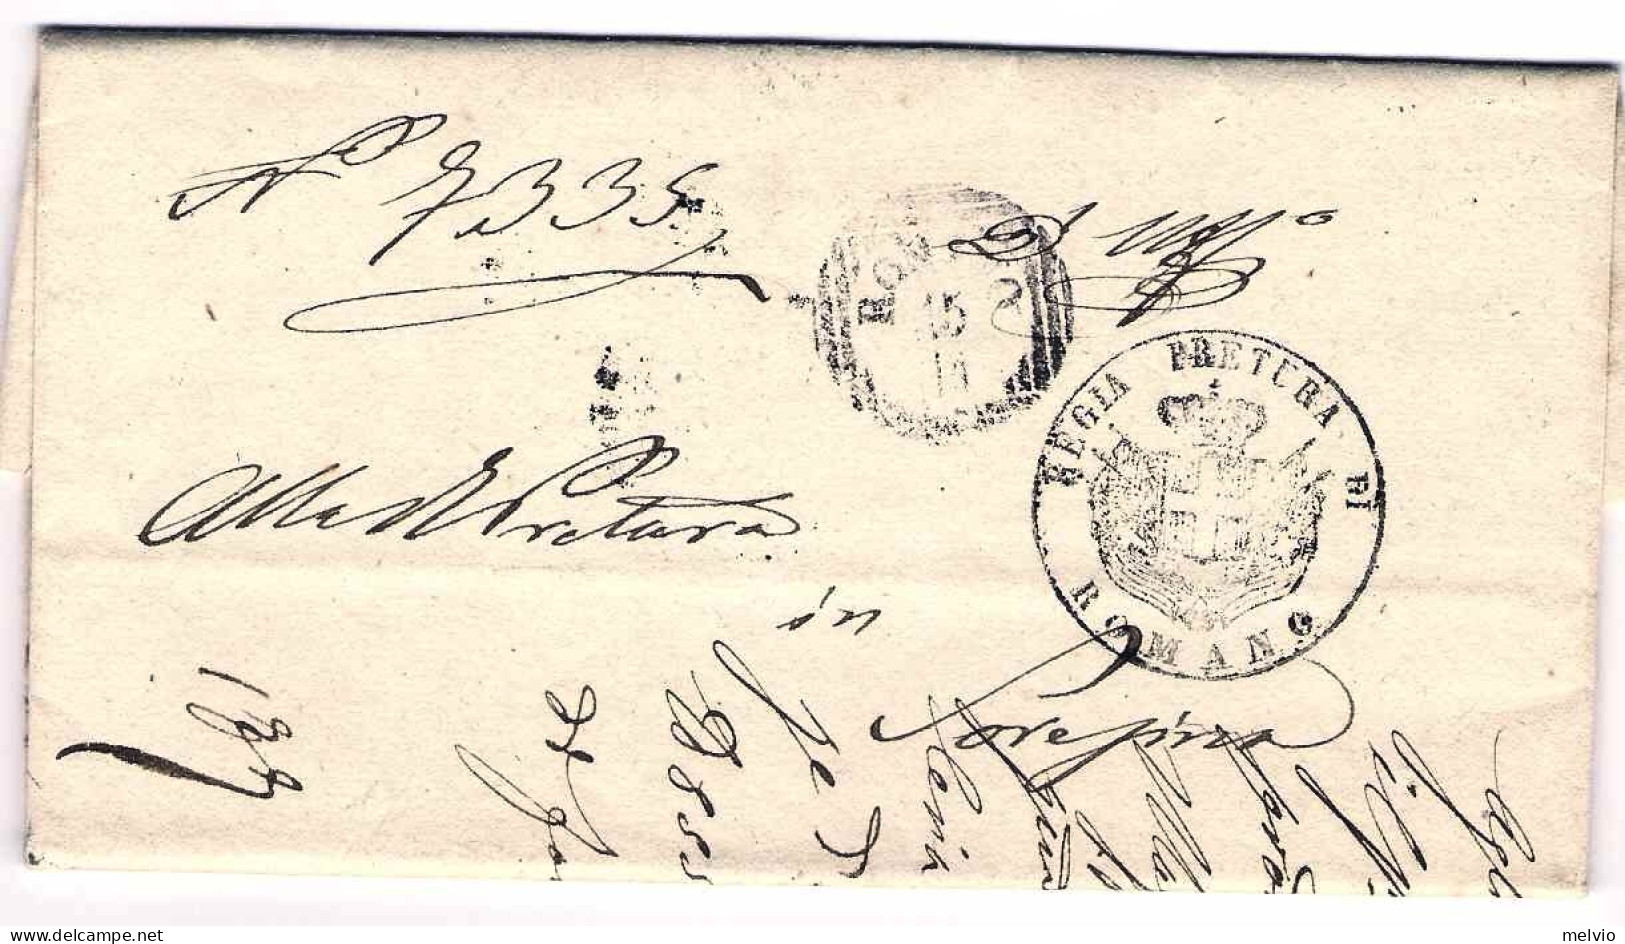 1860-lettera In Franchigia Con Annullo A Linee Orizzontali E Verticali Di Romano - Non Classés